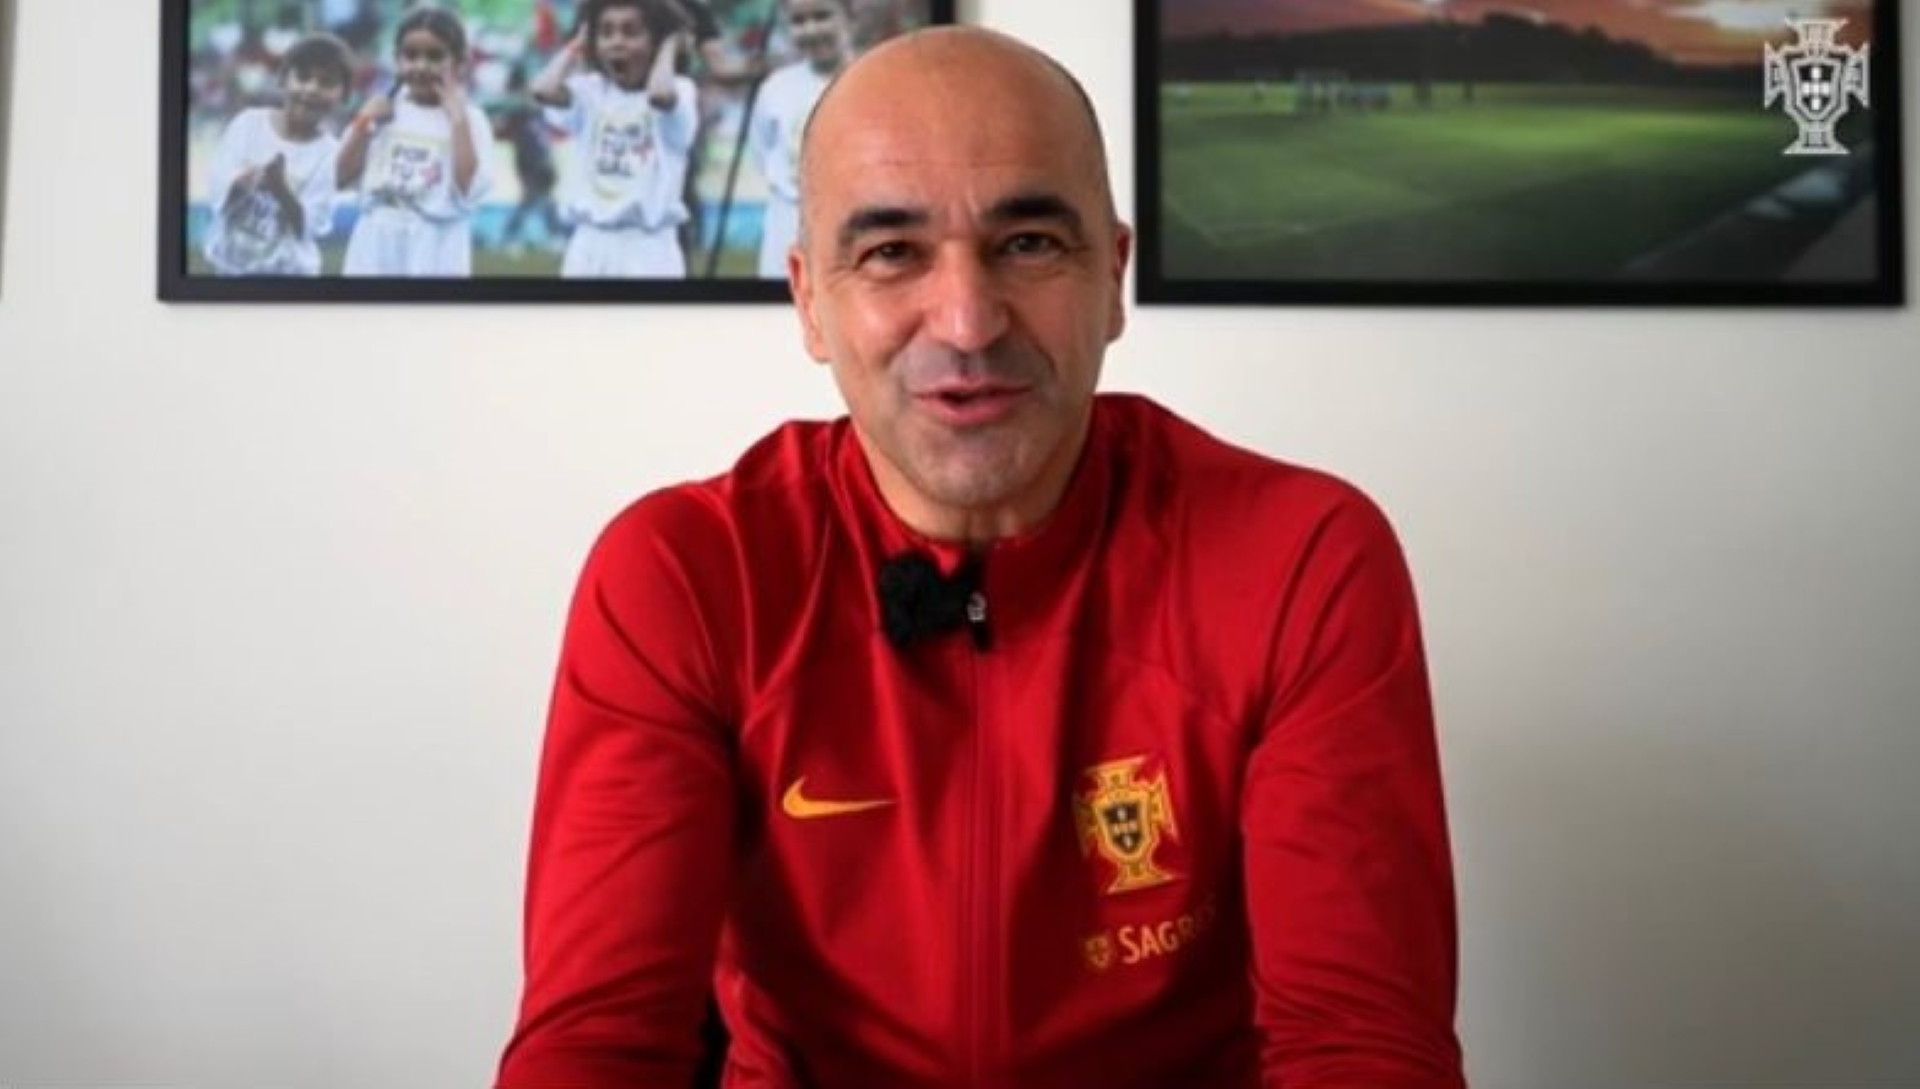 Como Roberto Martínez tornou Portugal numa máquina de ganhar jogos